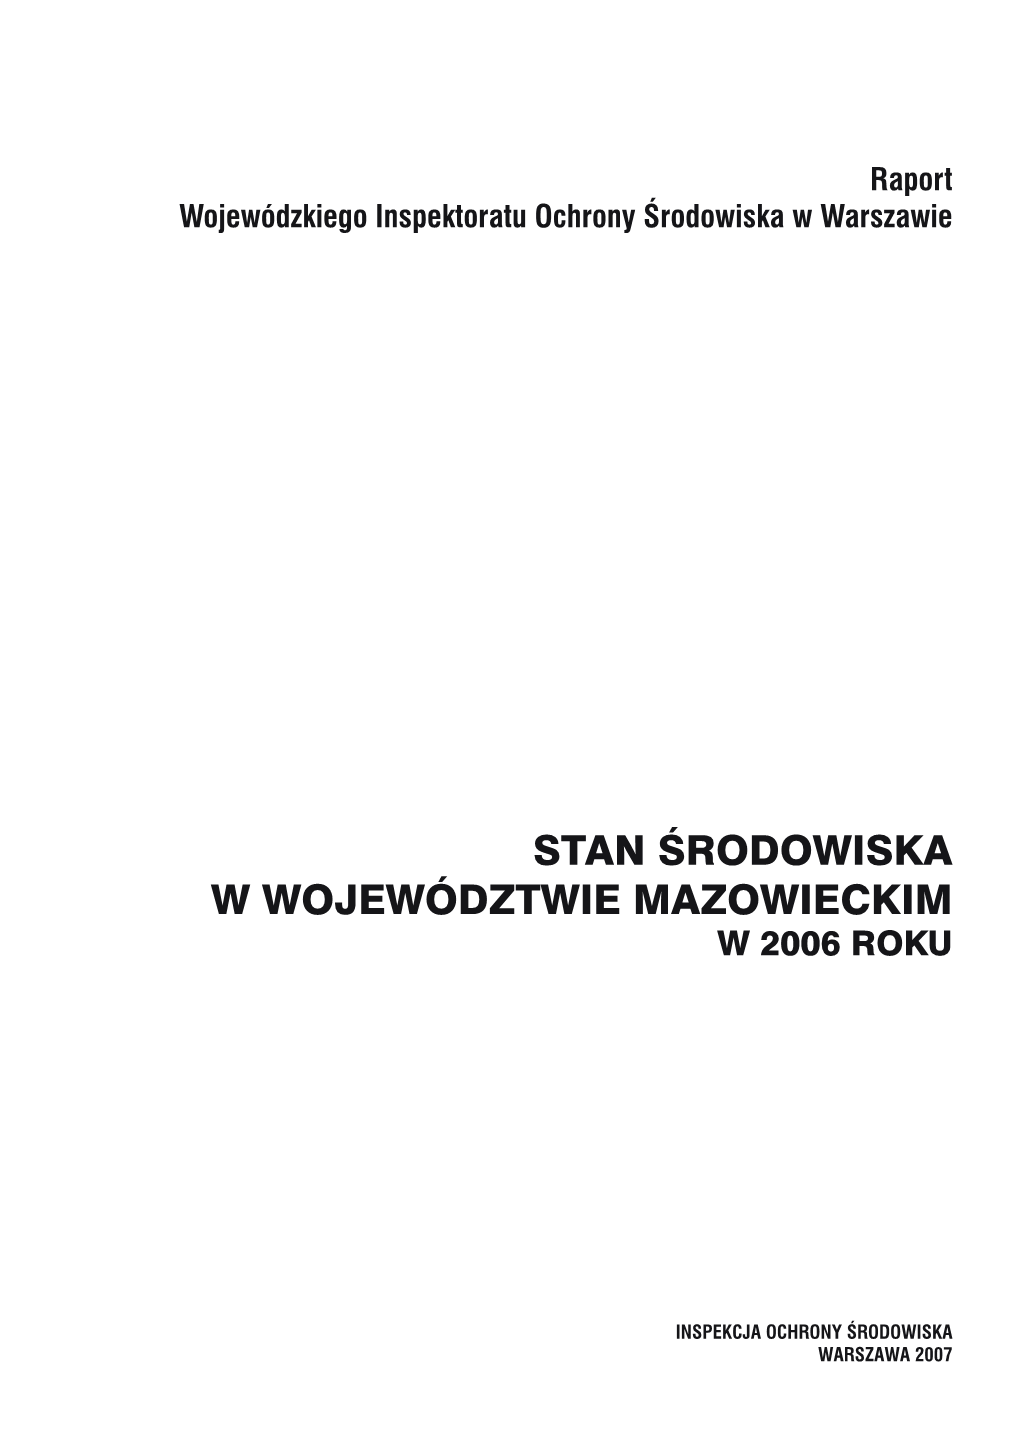 Stan Środowiska W Województwie Mazowieckim W 2006 Roku